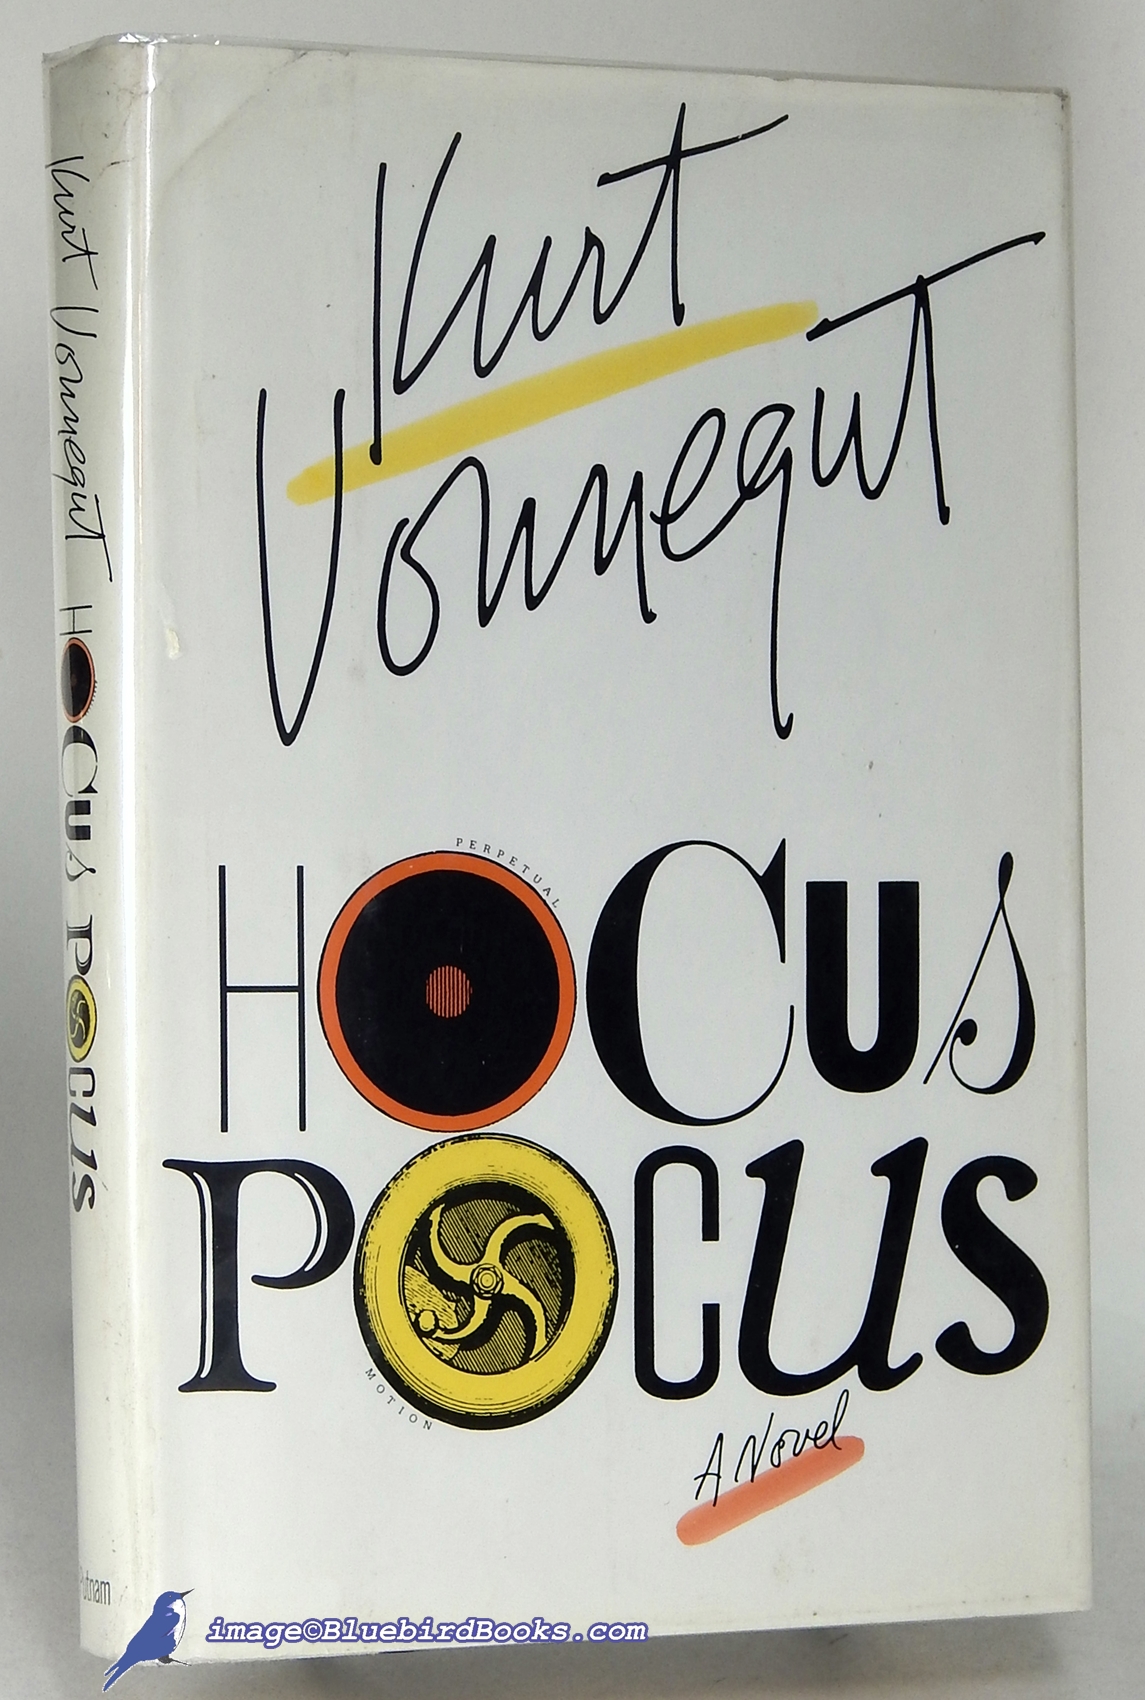 VONNEGUT, KURT - Hocus Pocus: A Novel